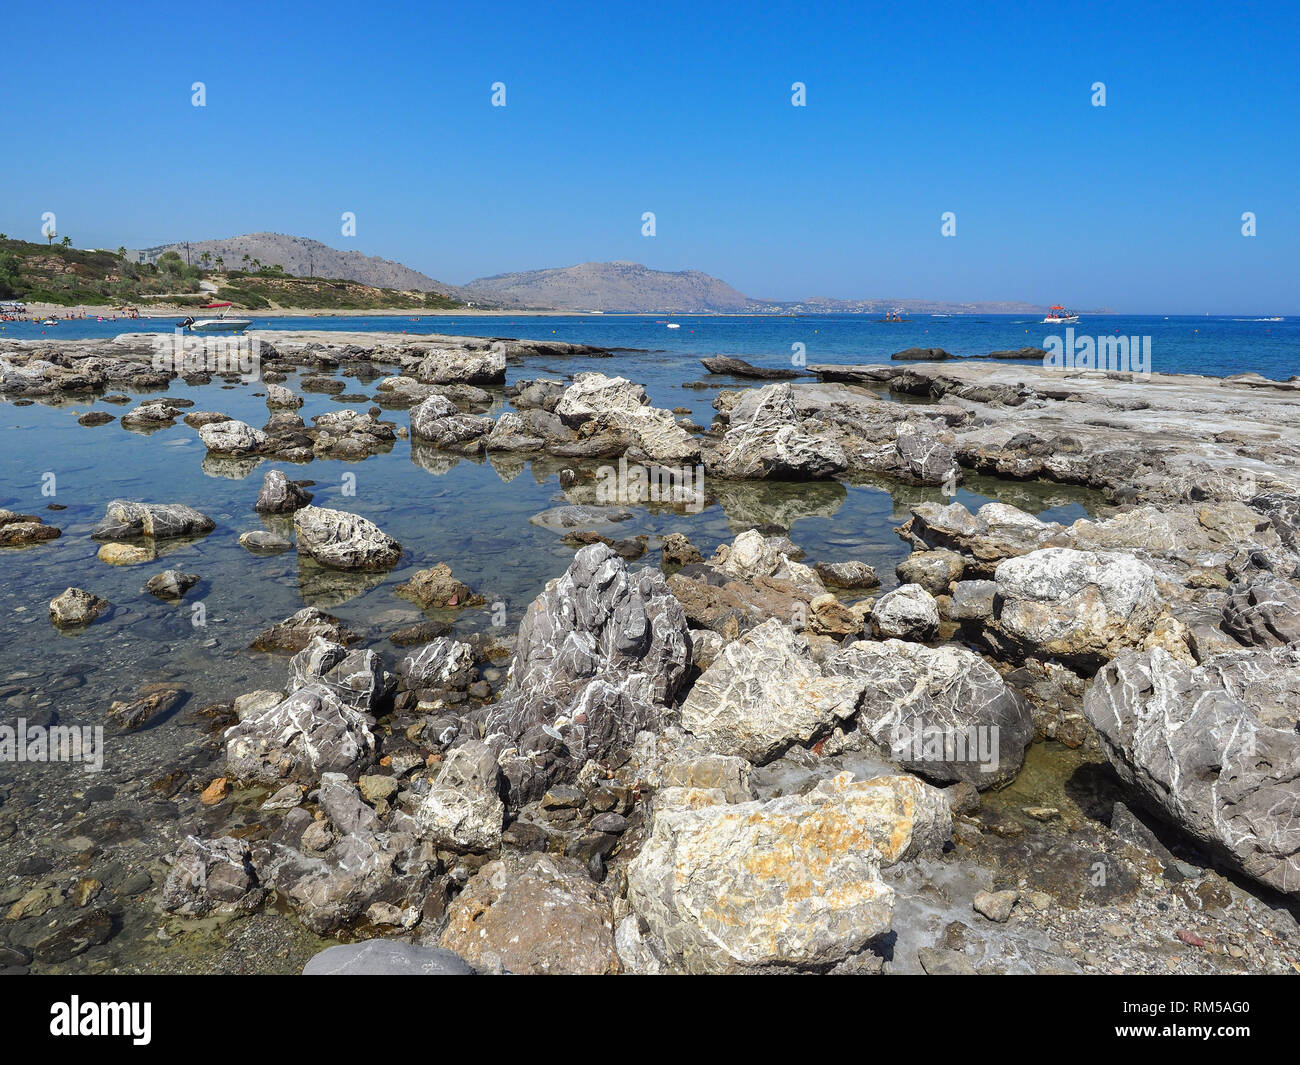 Wonderful beauty wild beach with stony rocky shore, shallow sea water. Beautiful scenery and sunny day on Kiotari, Rhodes Island, Greece. Stock Photo